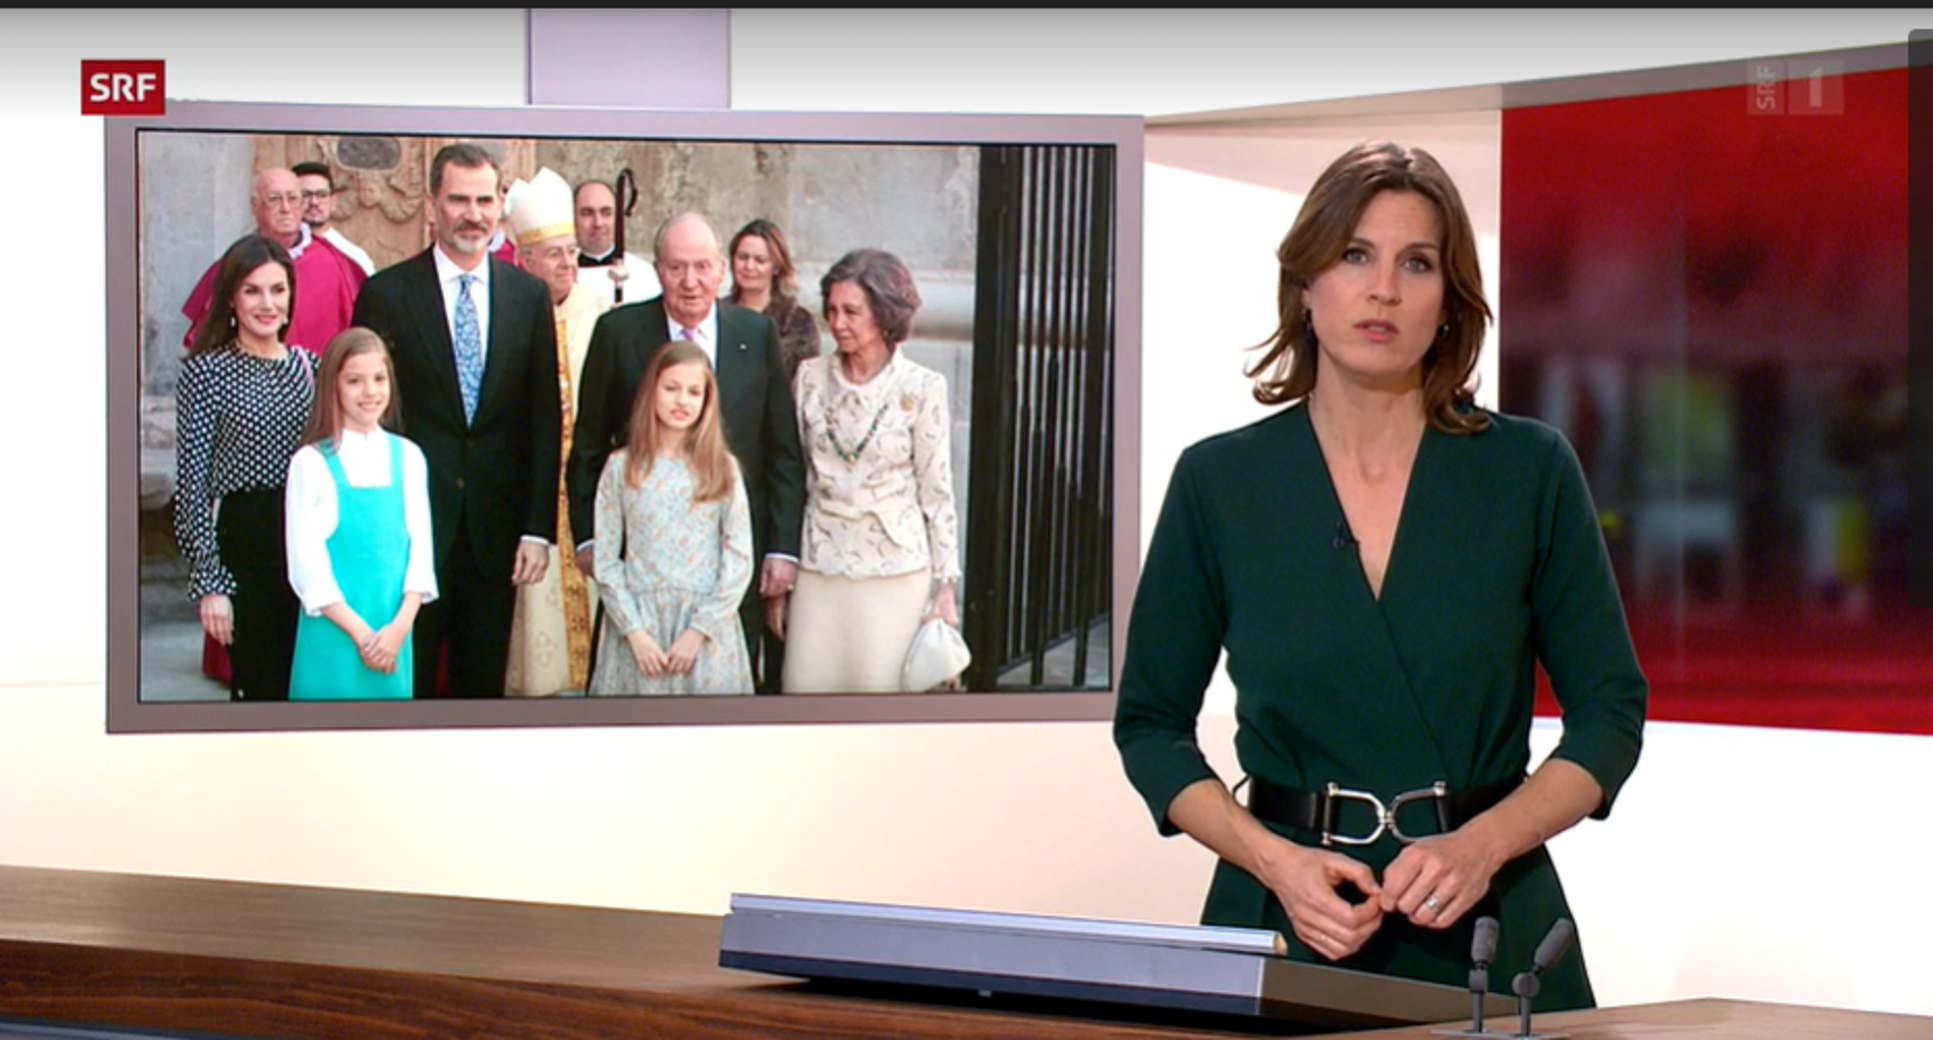 La TV suiza explica cómo el PSOE protege a la monarquía española: "Son leales"